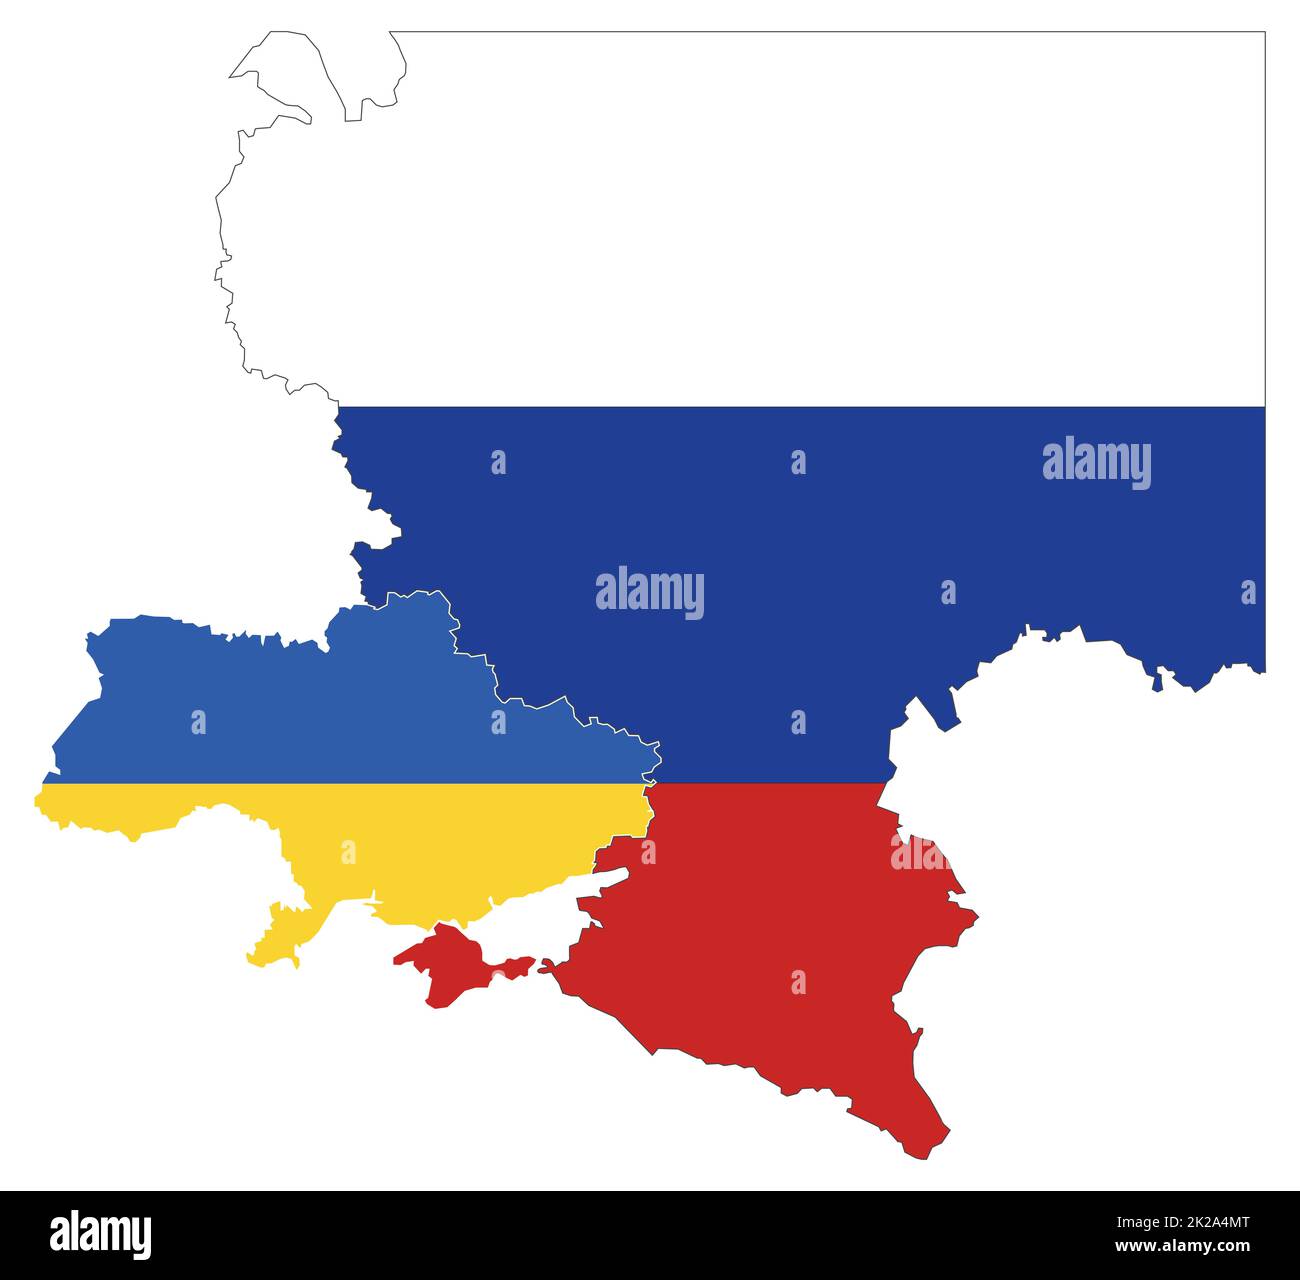 Carte de l'Ukraine et de la Russie avec drapeau national Banque D'Images